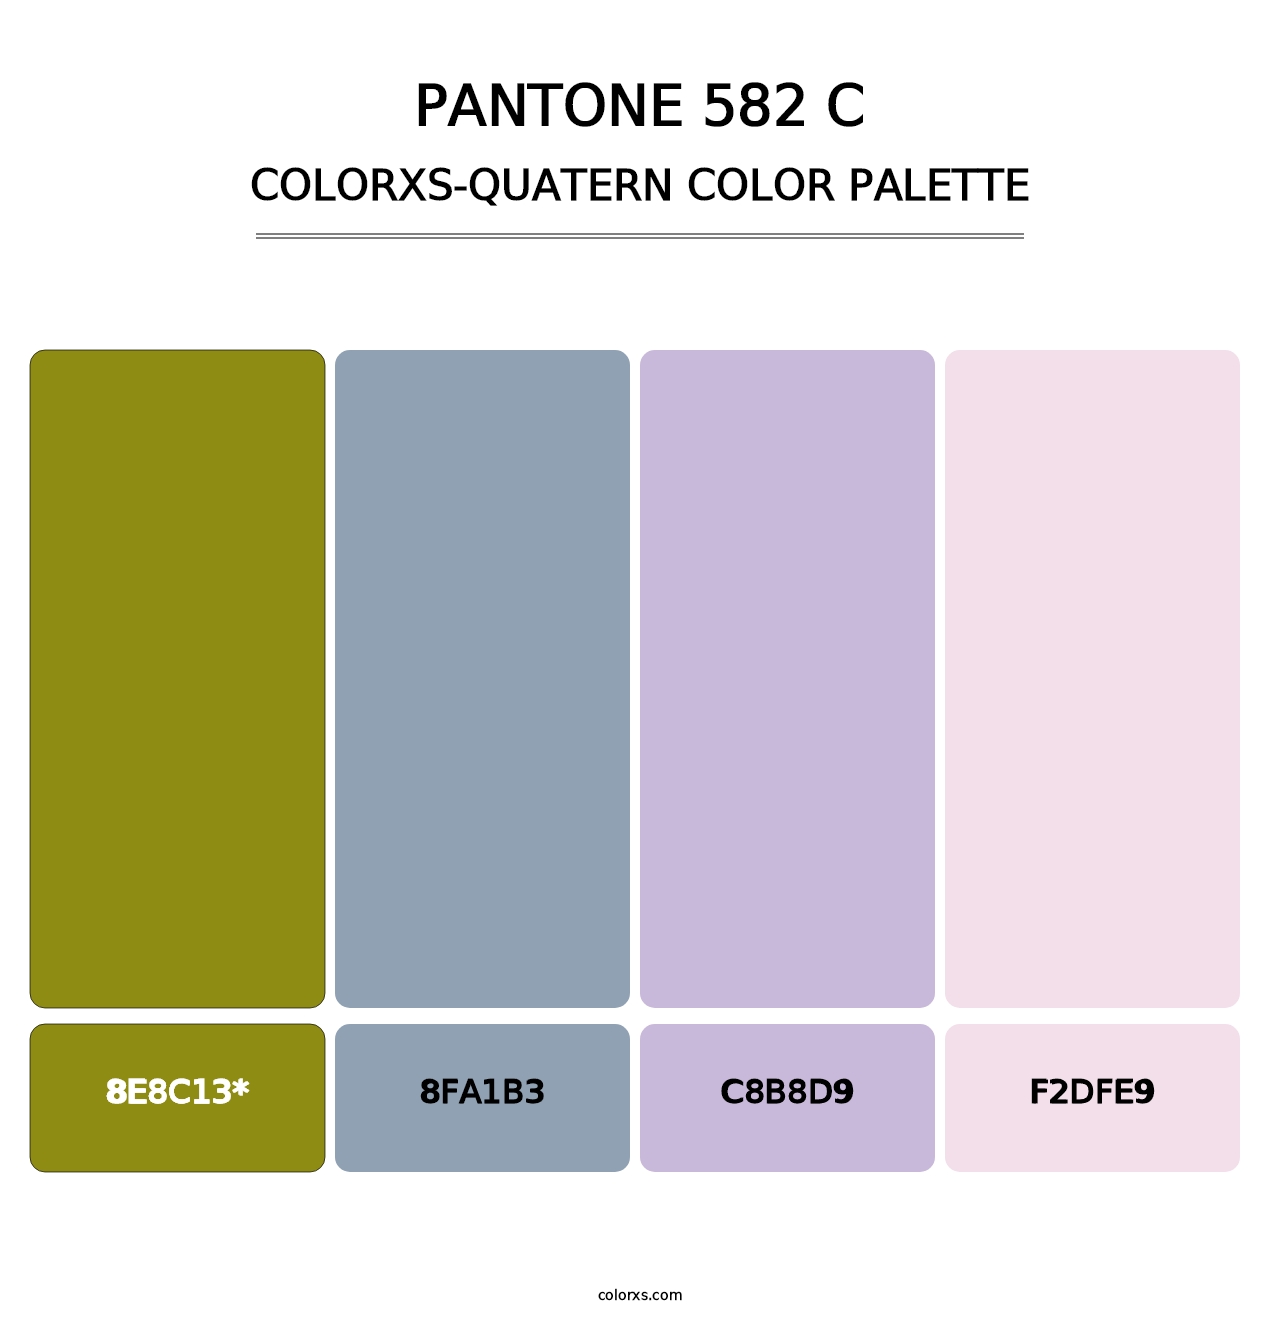 PANTONE 582 C - Colorxs Quatern Palette